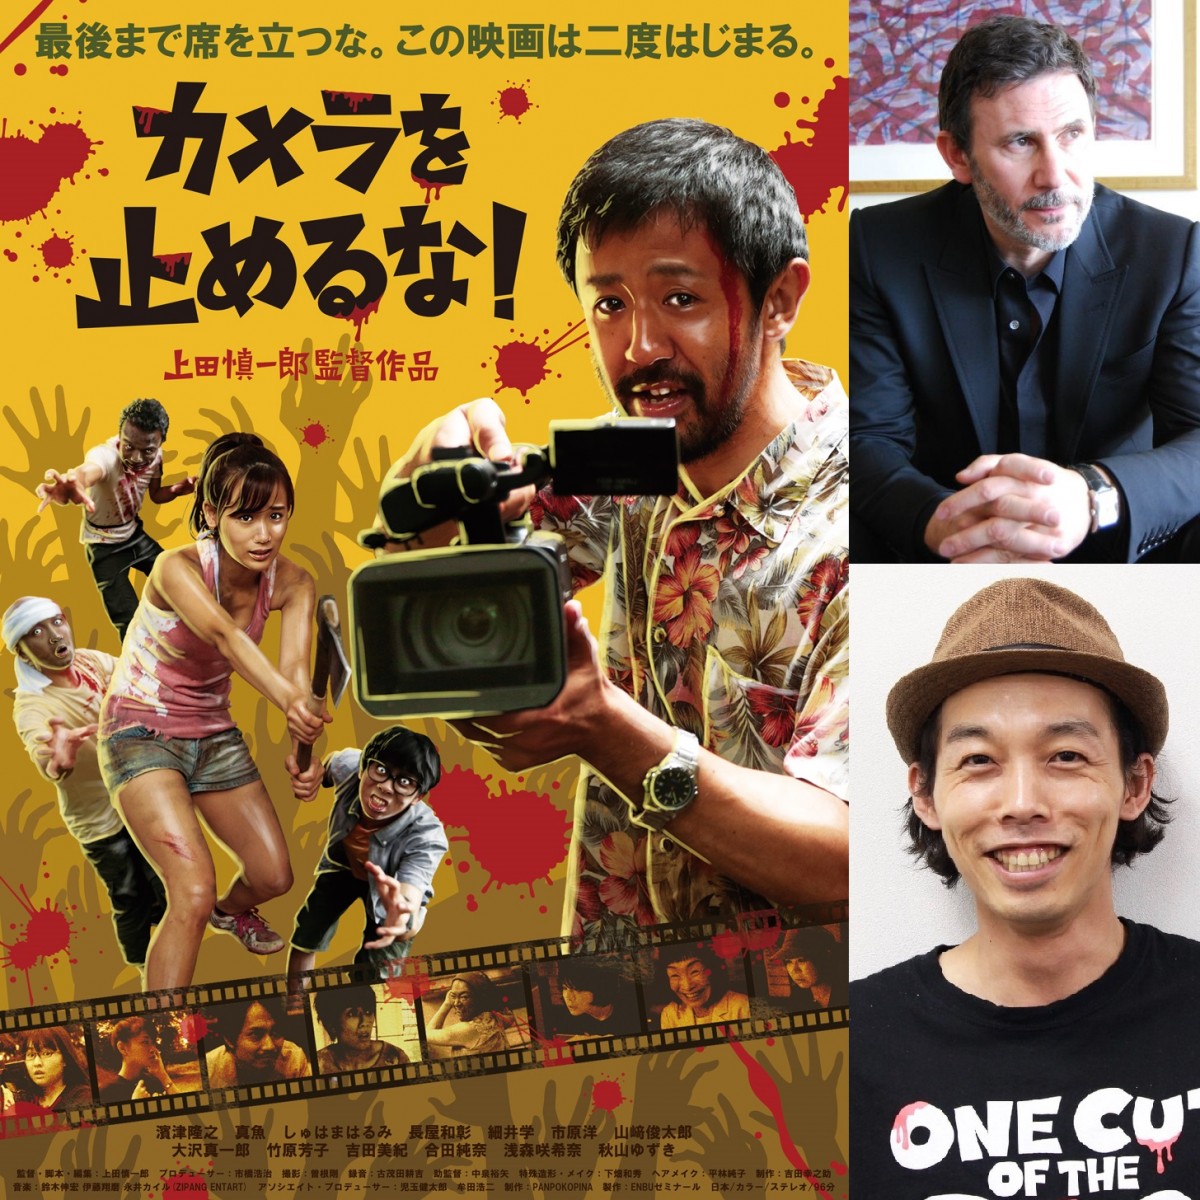 （左側）映画『カメラを止めるな！』ポスタービジュアル（右側上段）ミシェル・アザナヴィシウス監督（右側下段）上田慎一郎監督